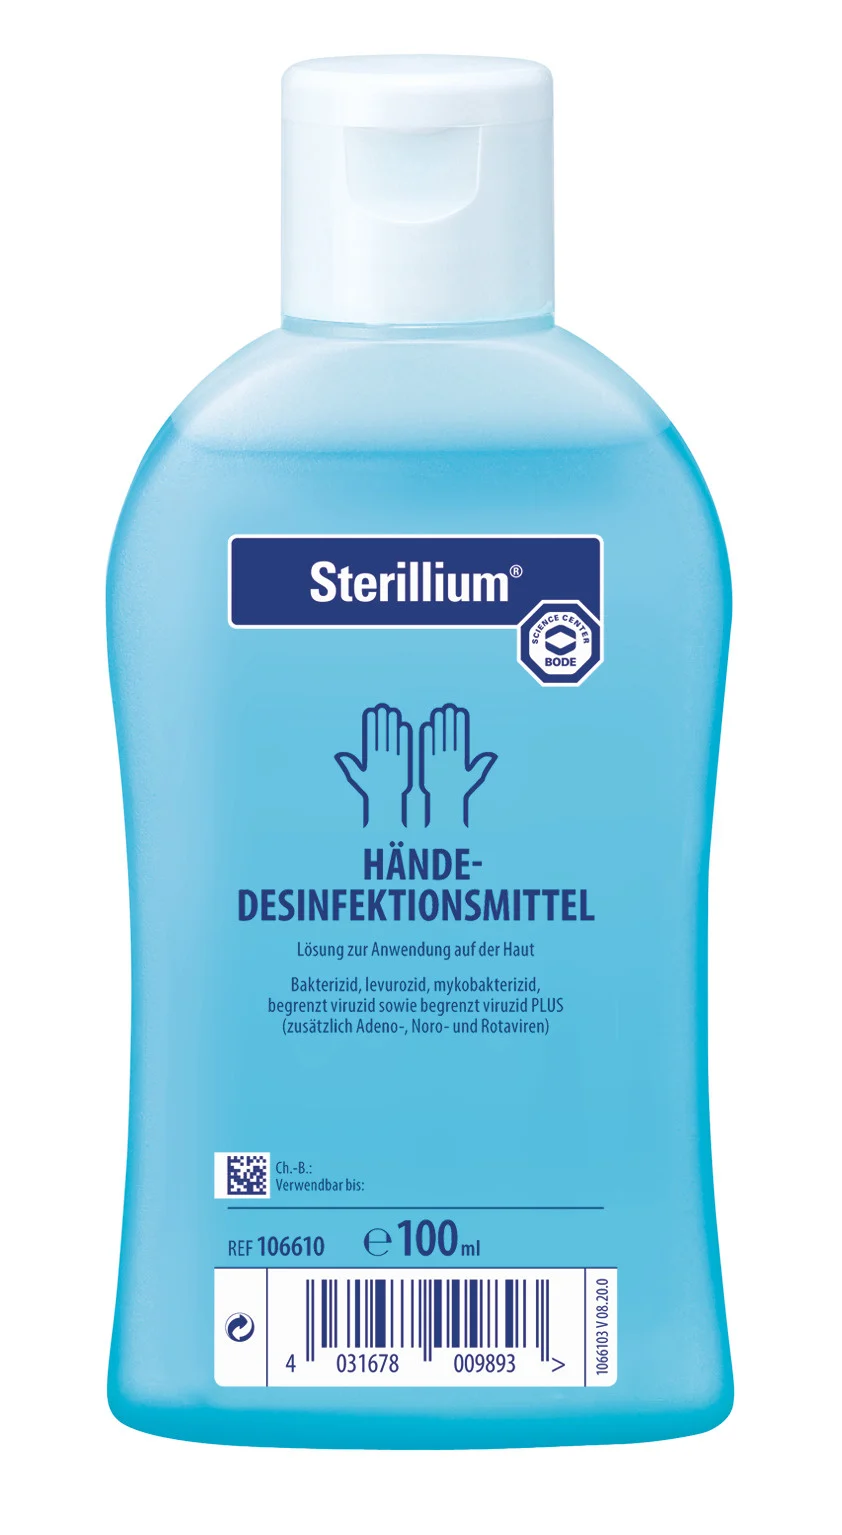 Sterillium Händedesinfektion, 100ml, 1 Stck.